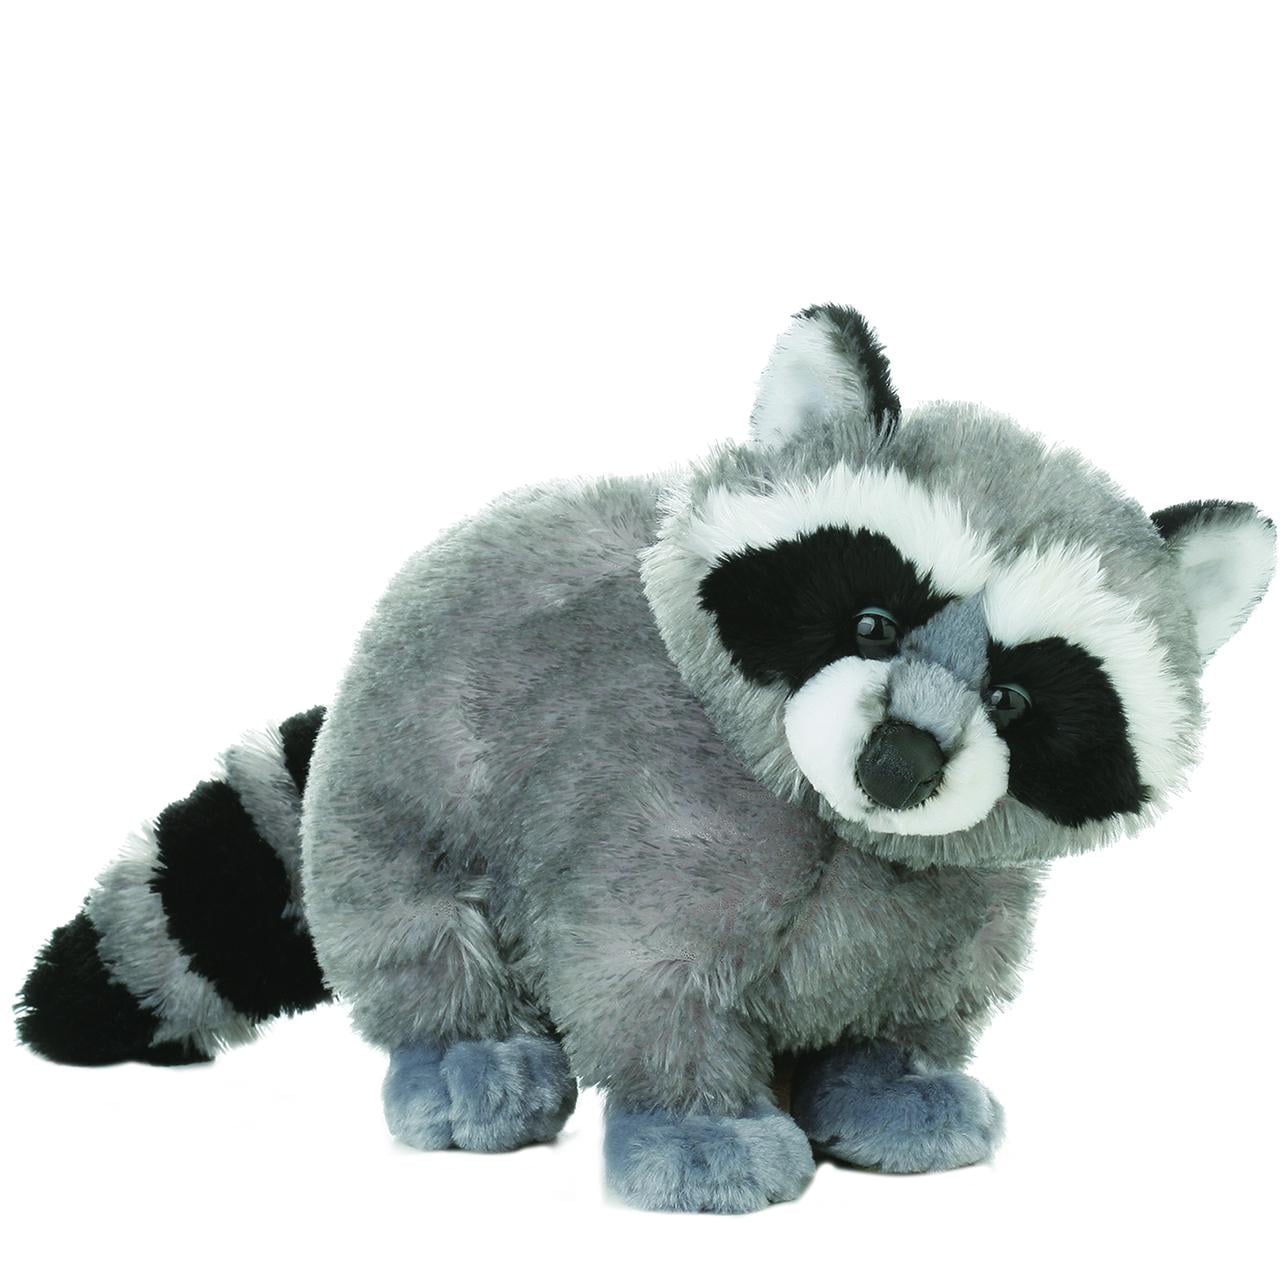 Про купить игрушку. Aurora 12" Bandit Raccoon Flopsie Plush stuffed animal. Aurora игрушки енот.